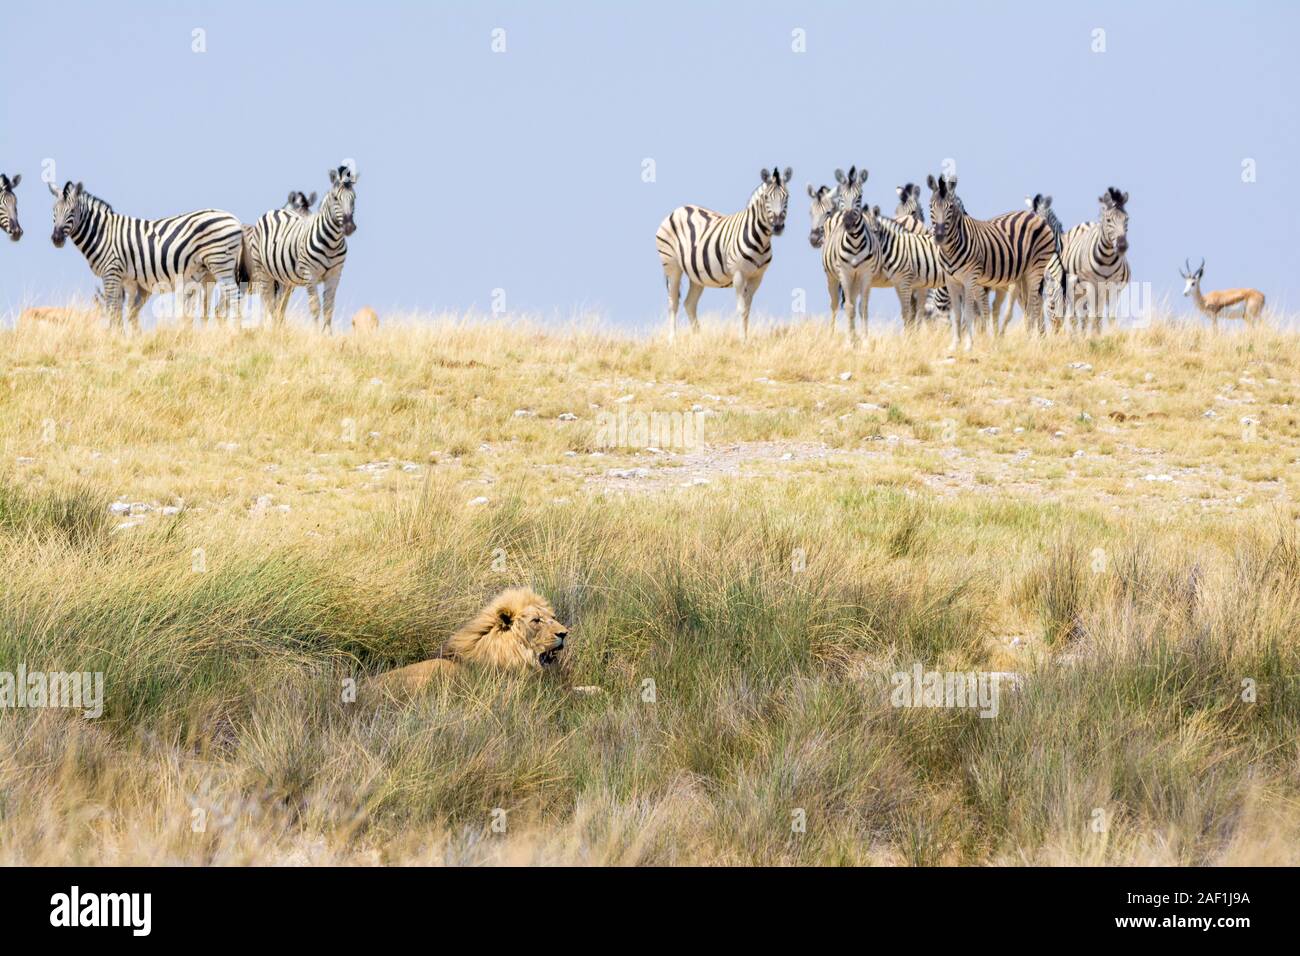 Löwe Panthera leo, liegen auf dem Boden und eine Gruppe von gemeinsamen Zebras, Equus quagga, Essen und beeing vorsichtig Stockfoto